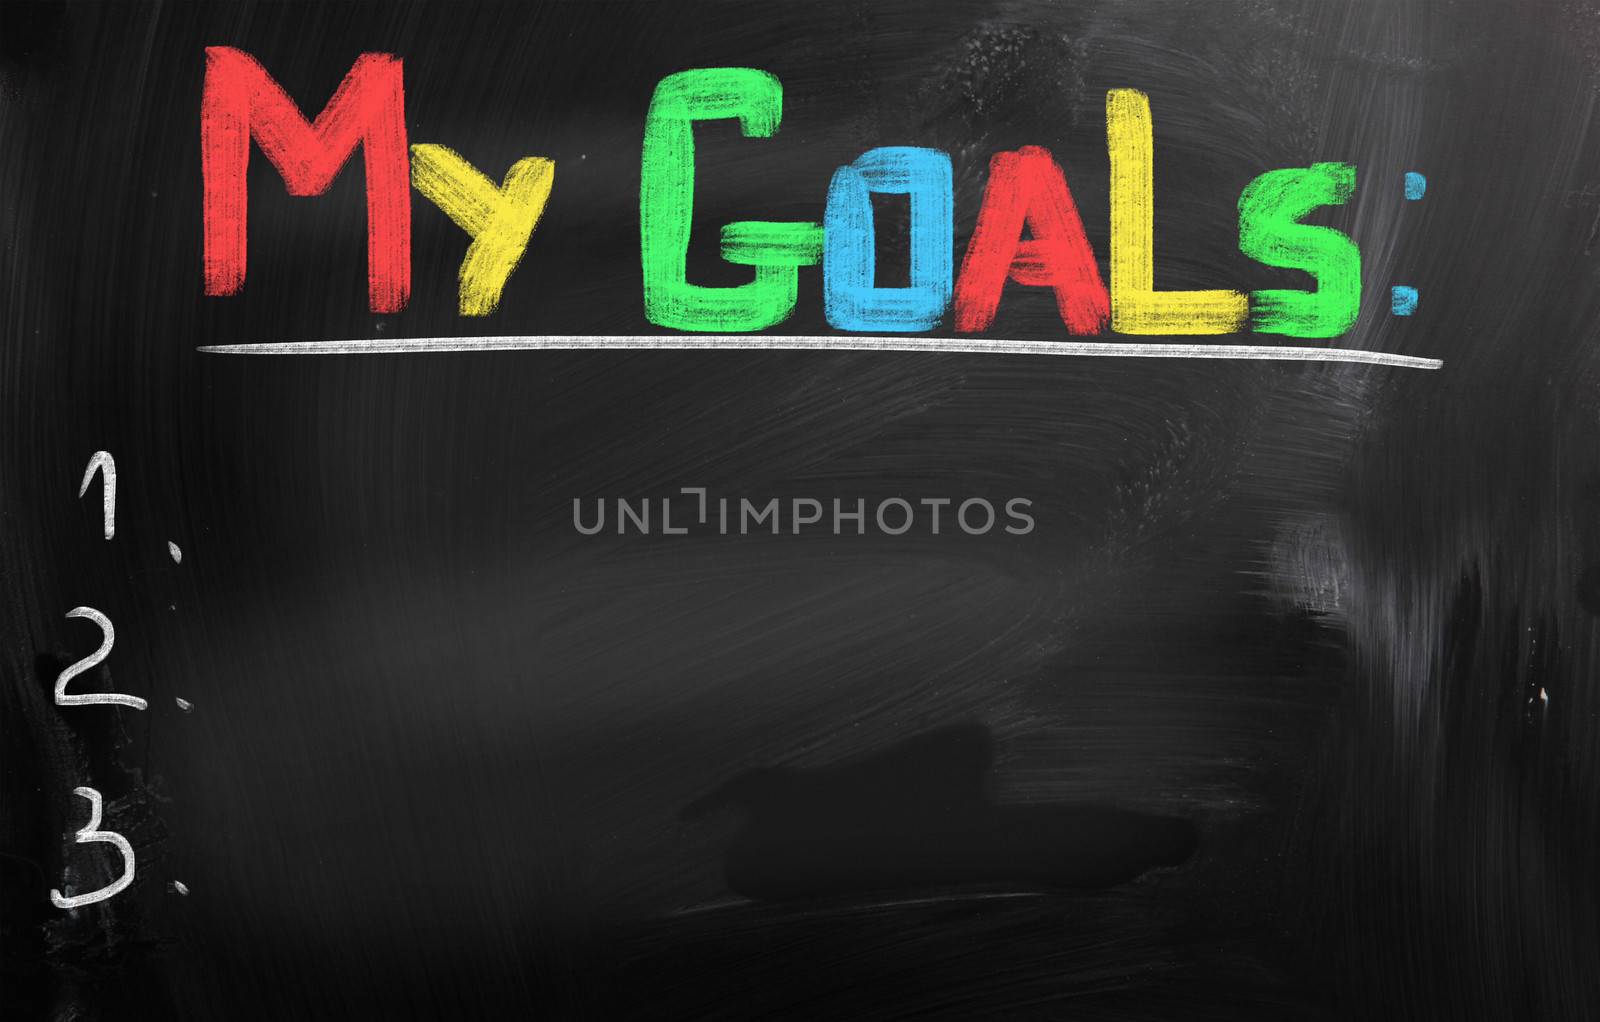 My Goals Concept by KrasimiraNevenova